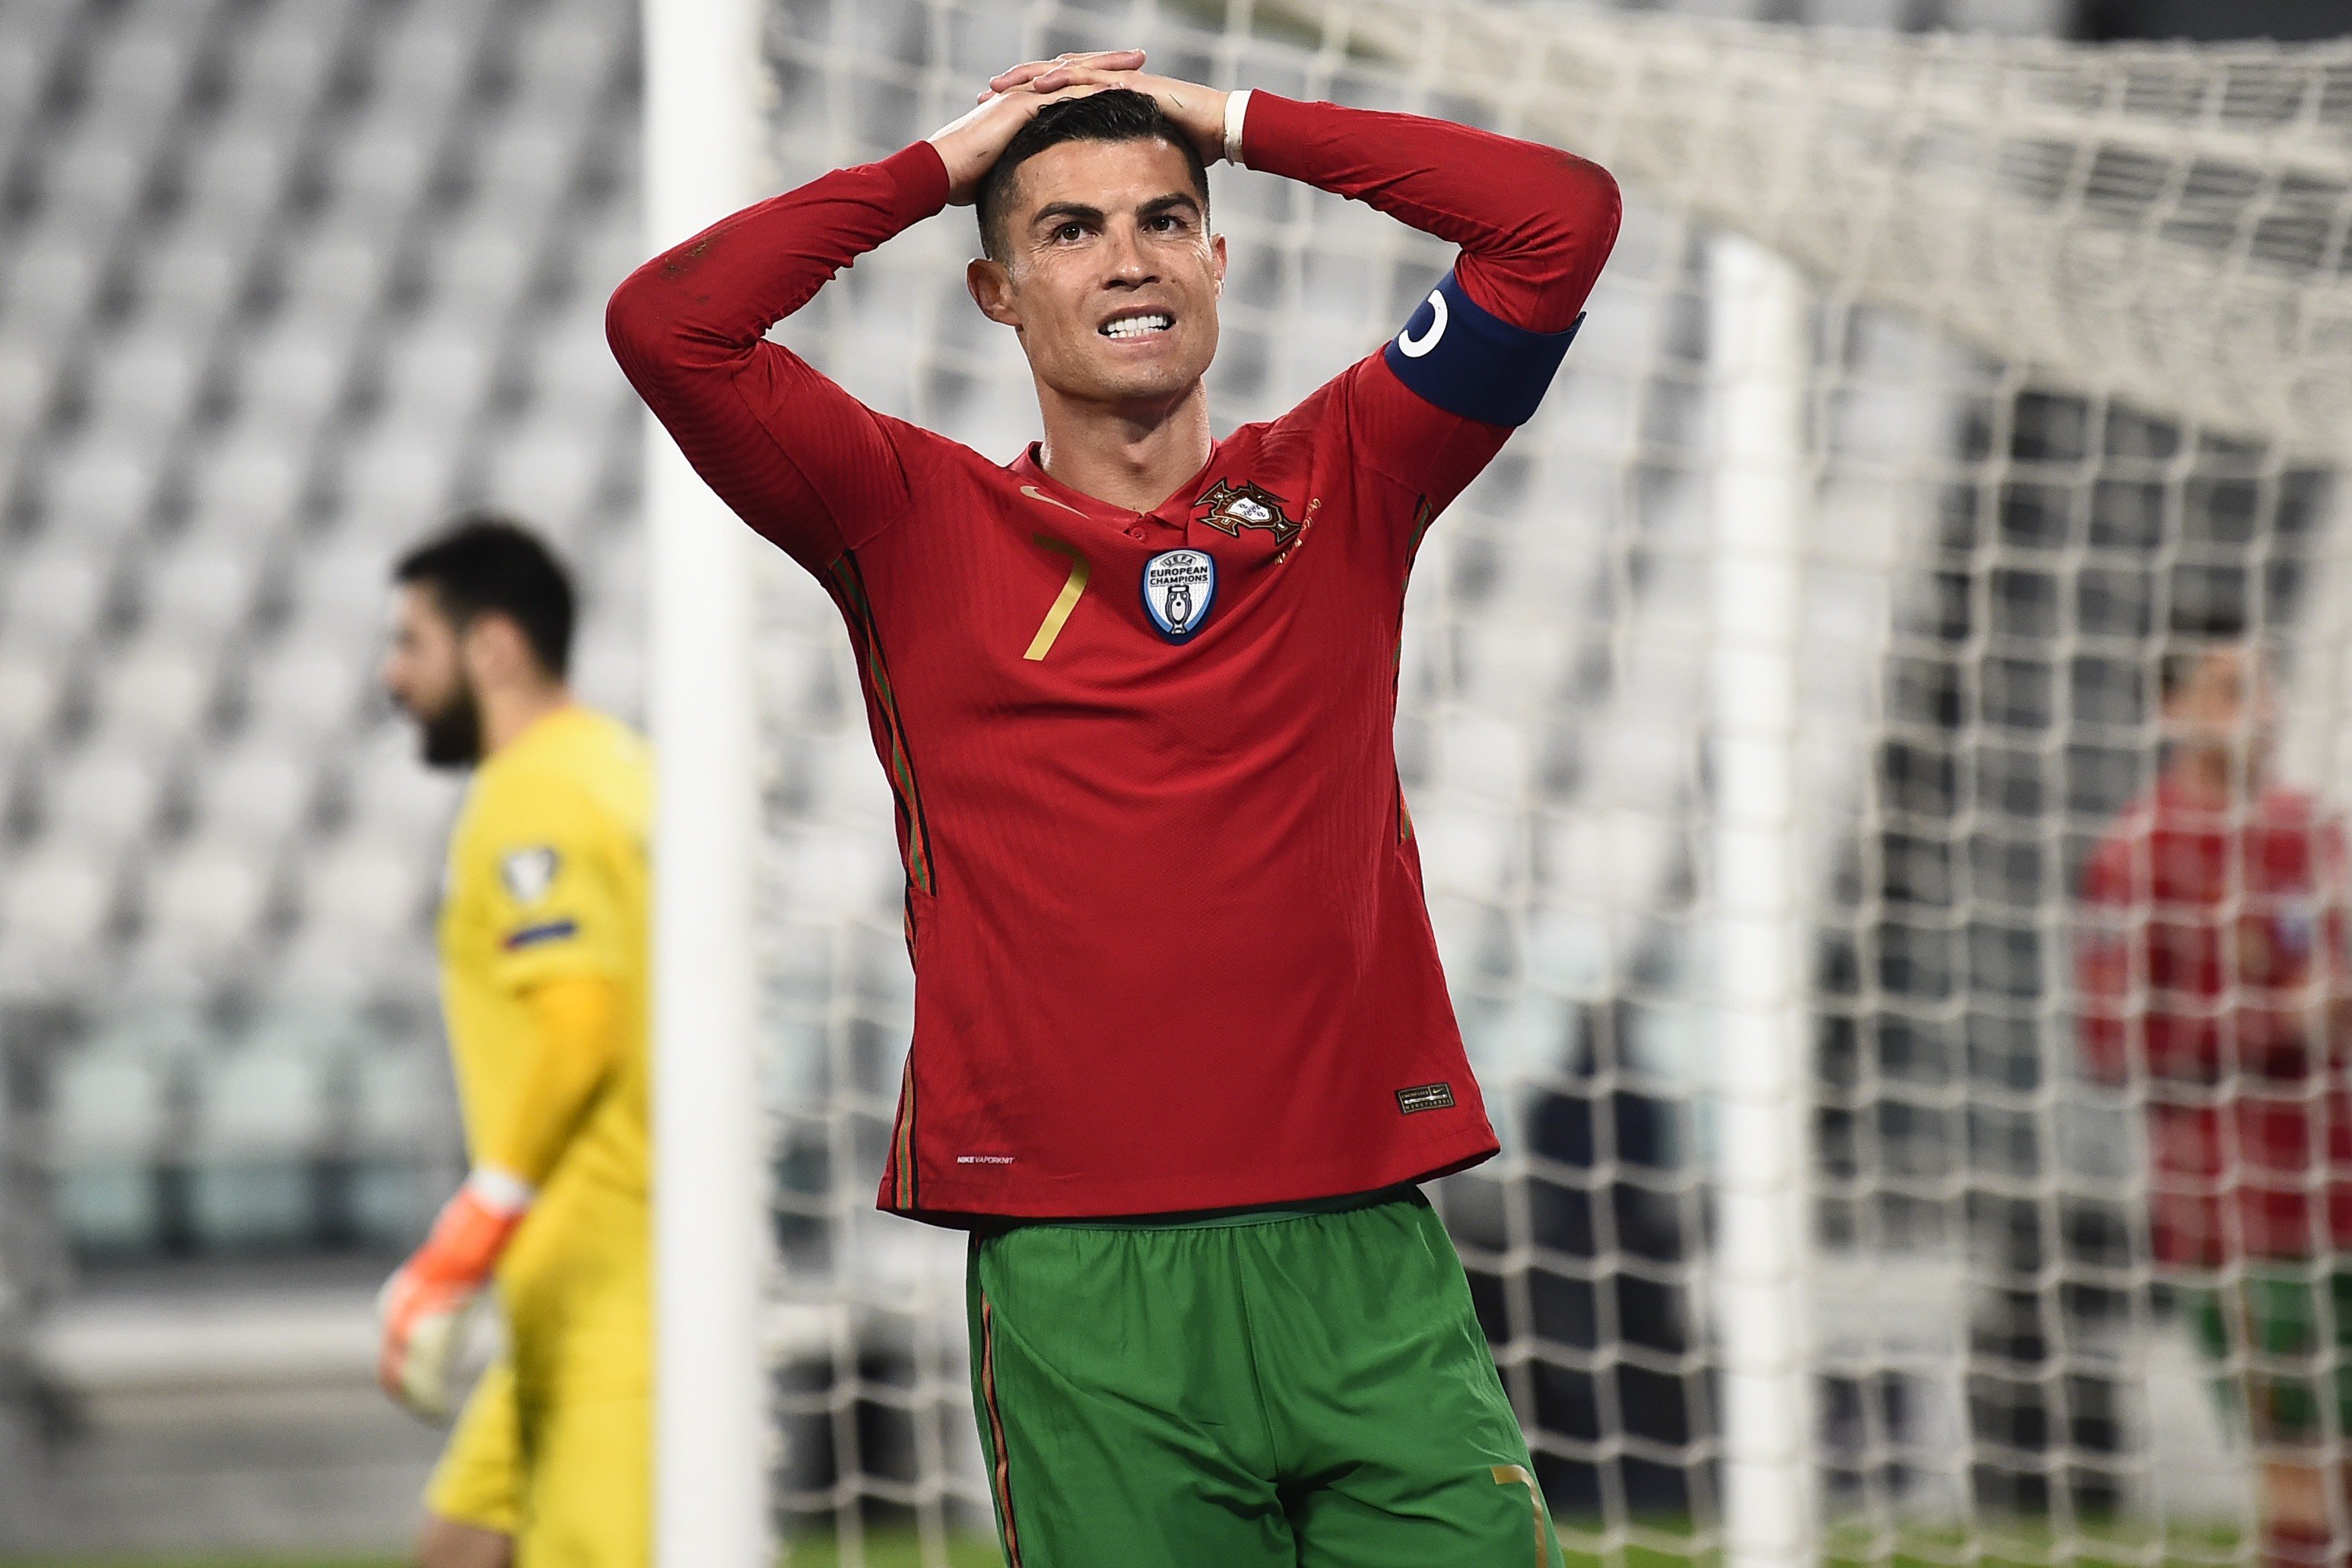 Clamoroso in Inghilterra, Cristiano Ronaldo indagato: il motivo |  Sport e Vai